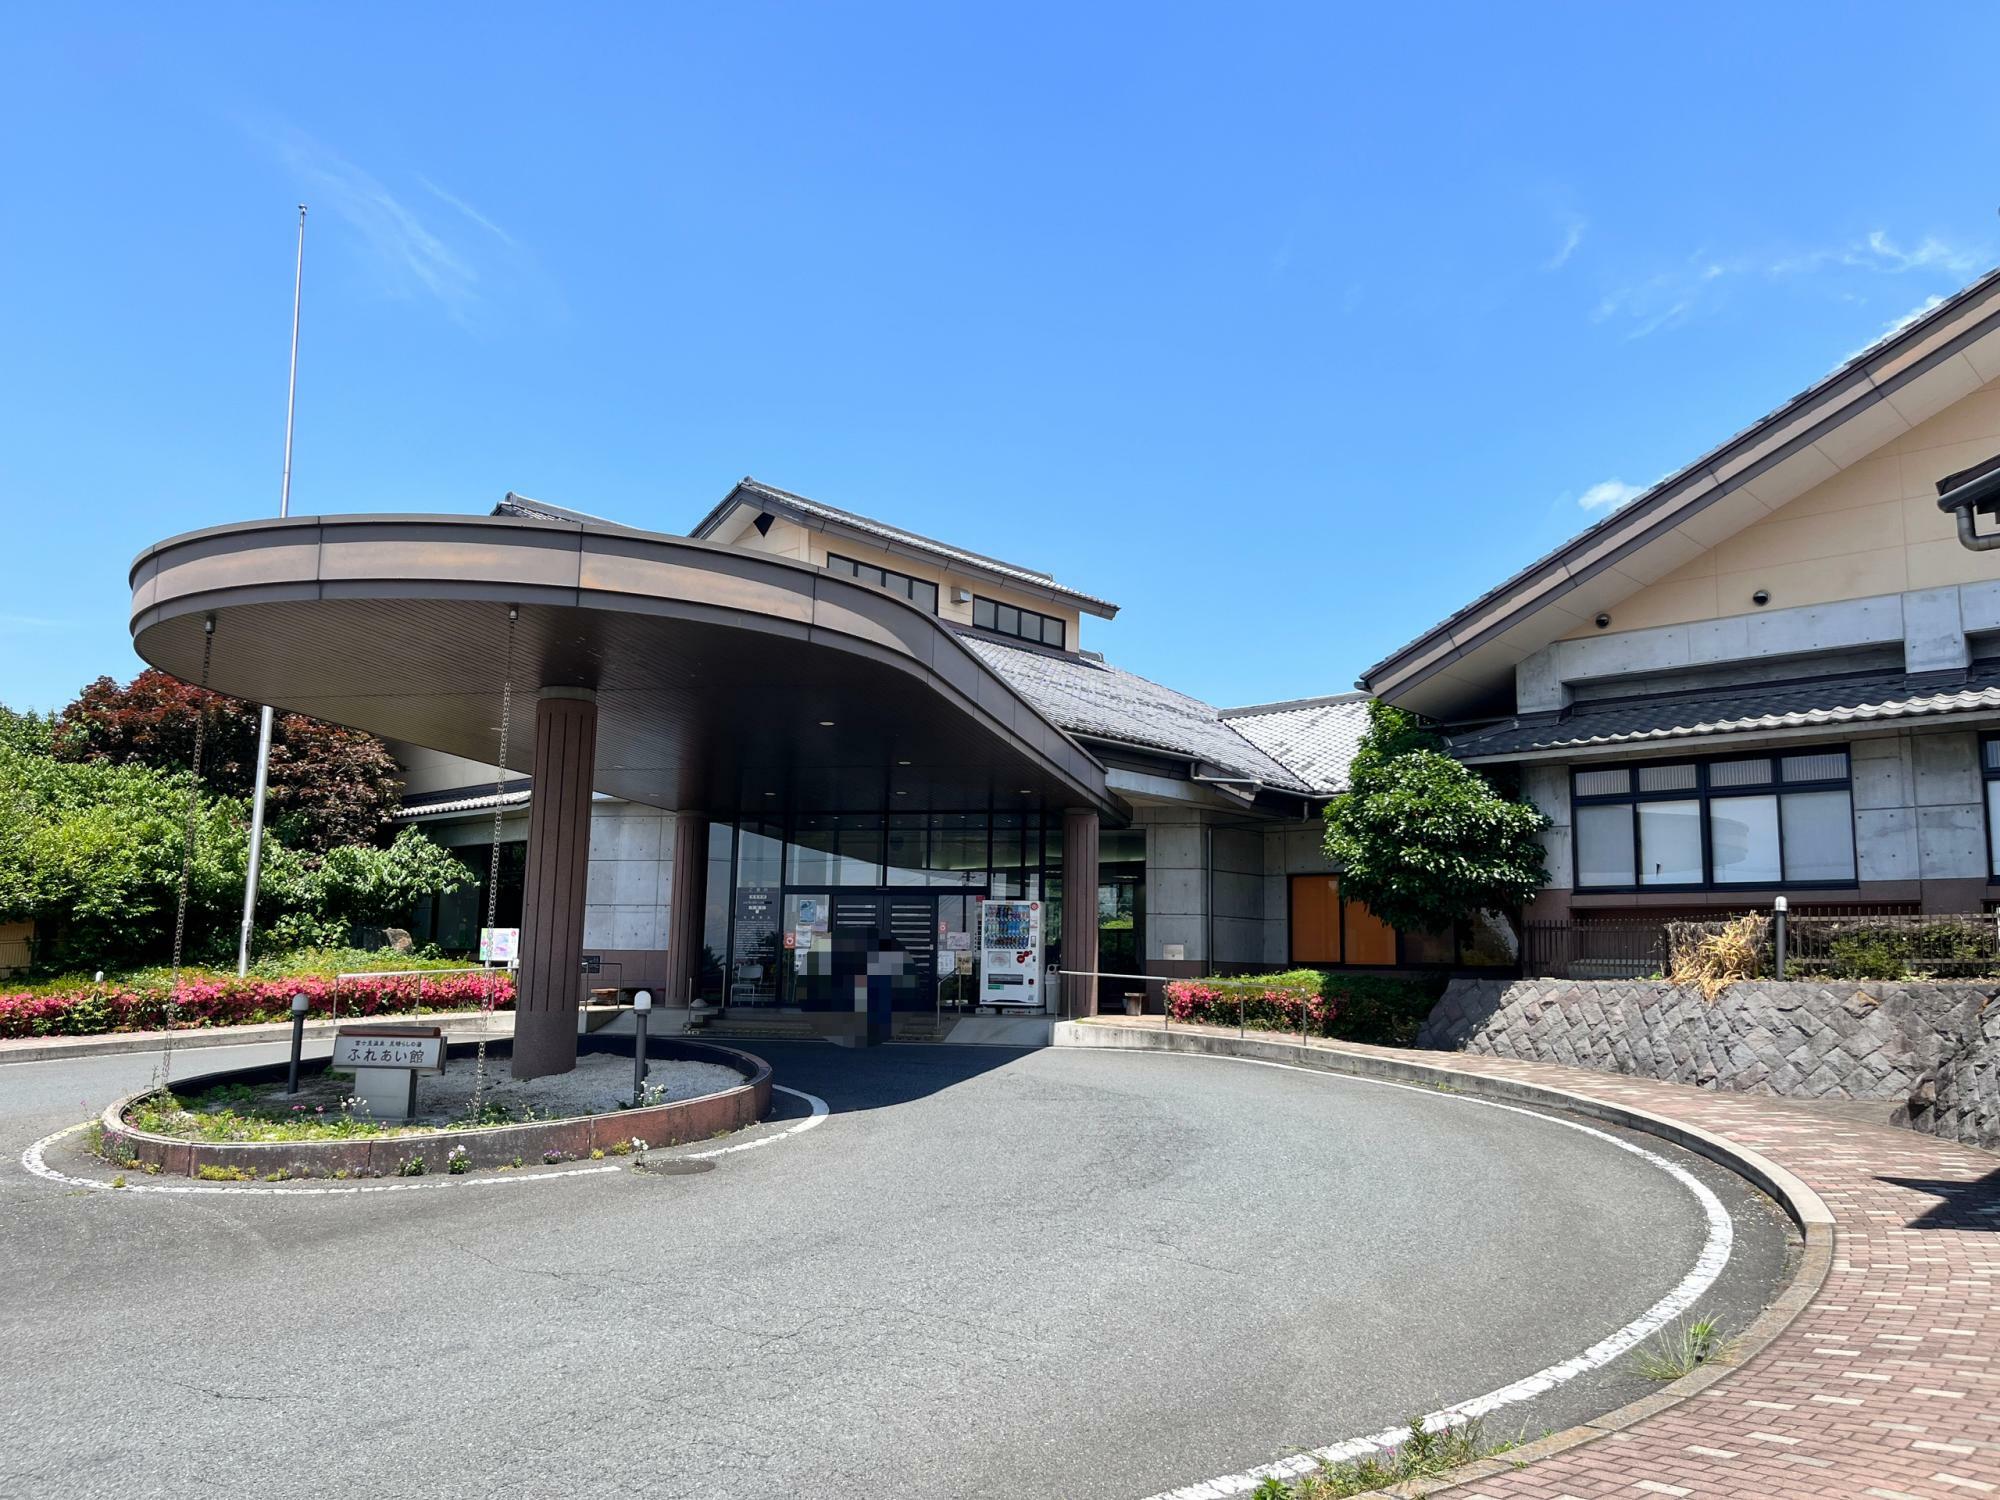 「富士見温泉見晴らしの湯」の施設外観